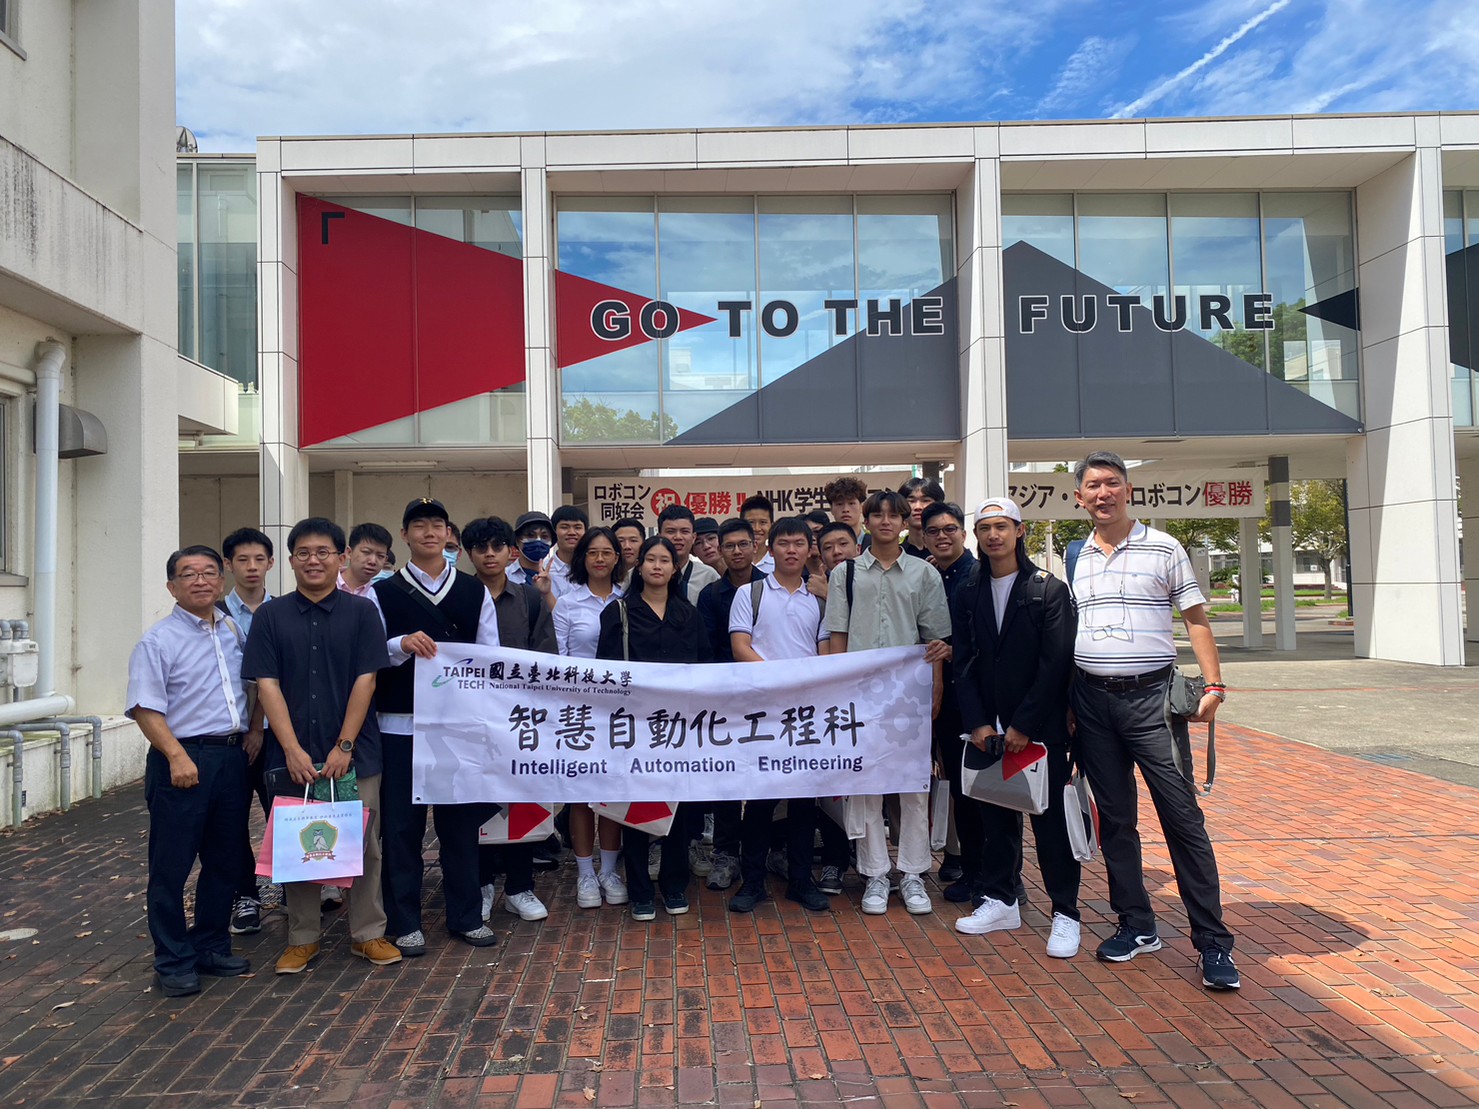 由智動科李政宏老師帶領本科學生23人於2023/9/3~8至日本參訪豐橋技術科學大學並洽談交換學生等跨校合作項目。